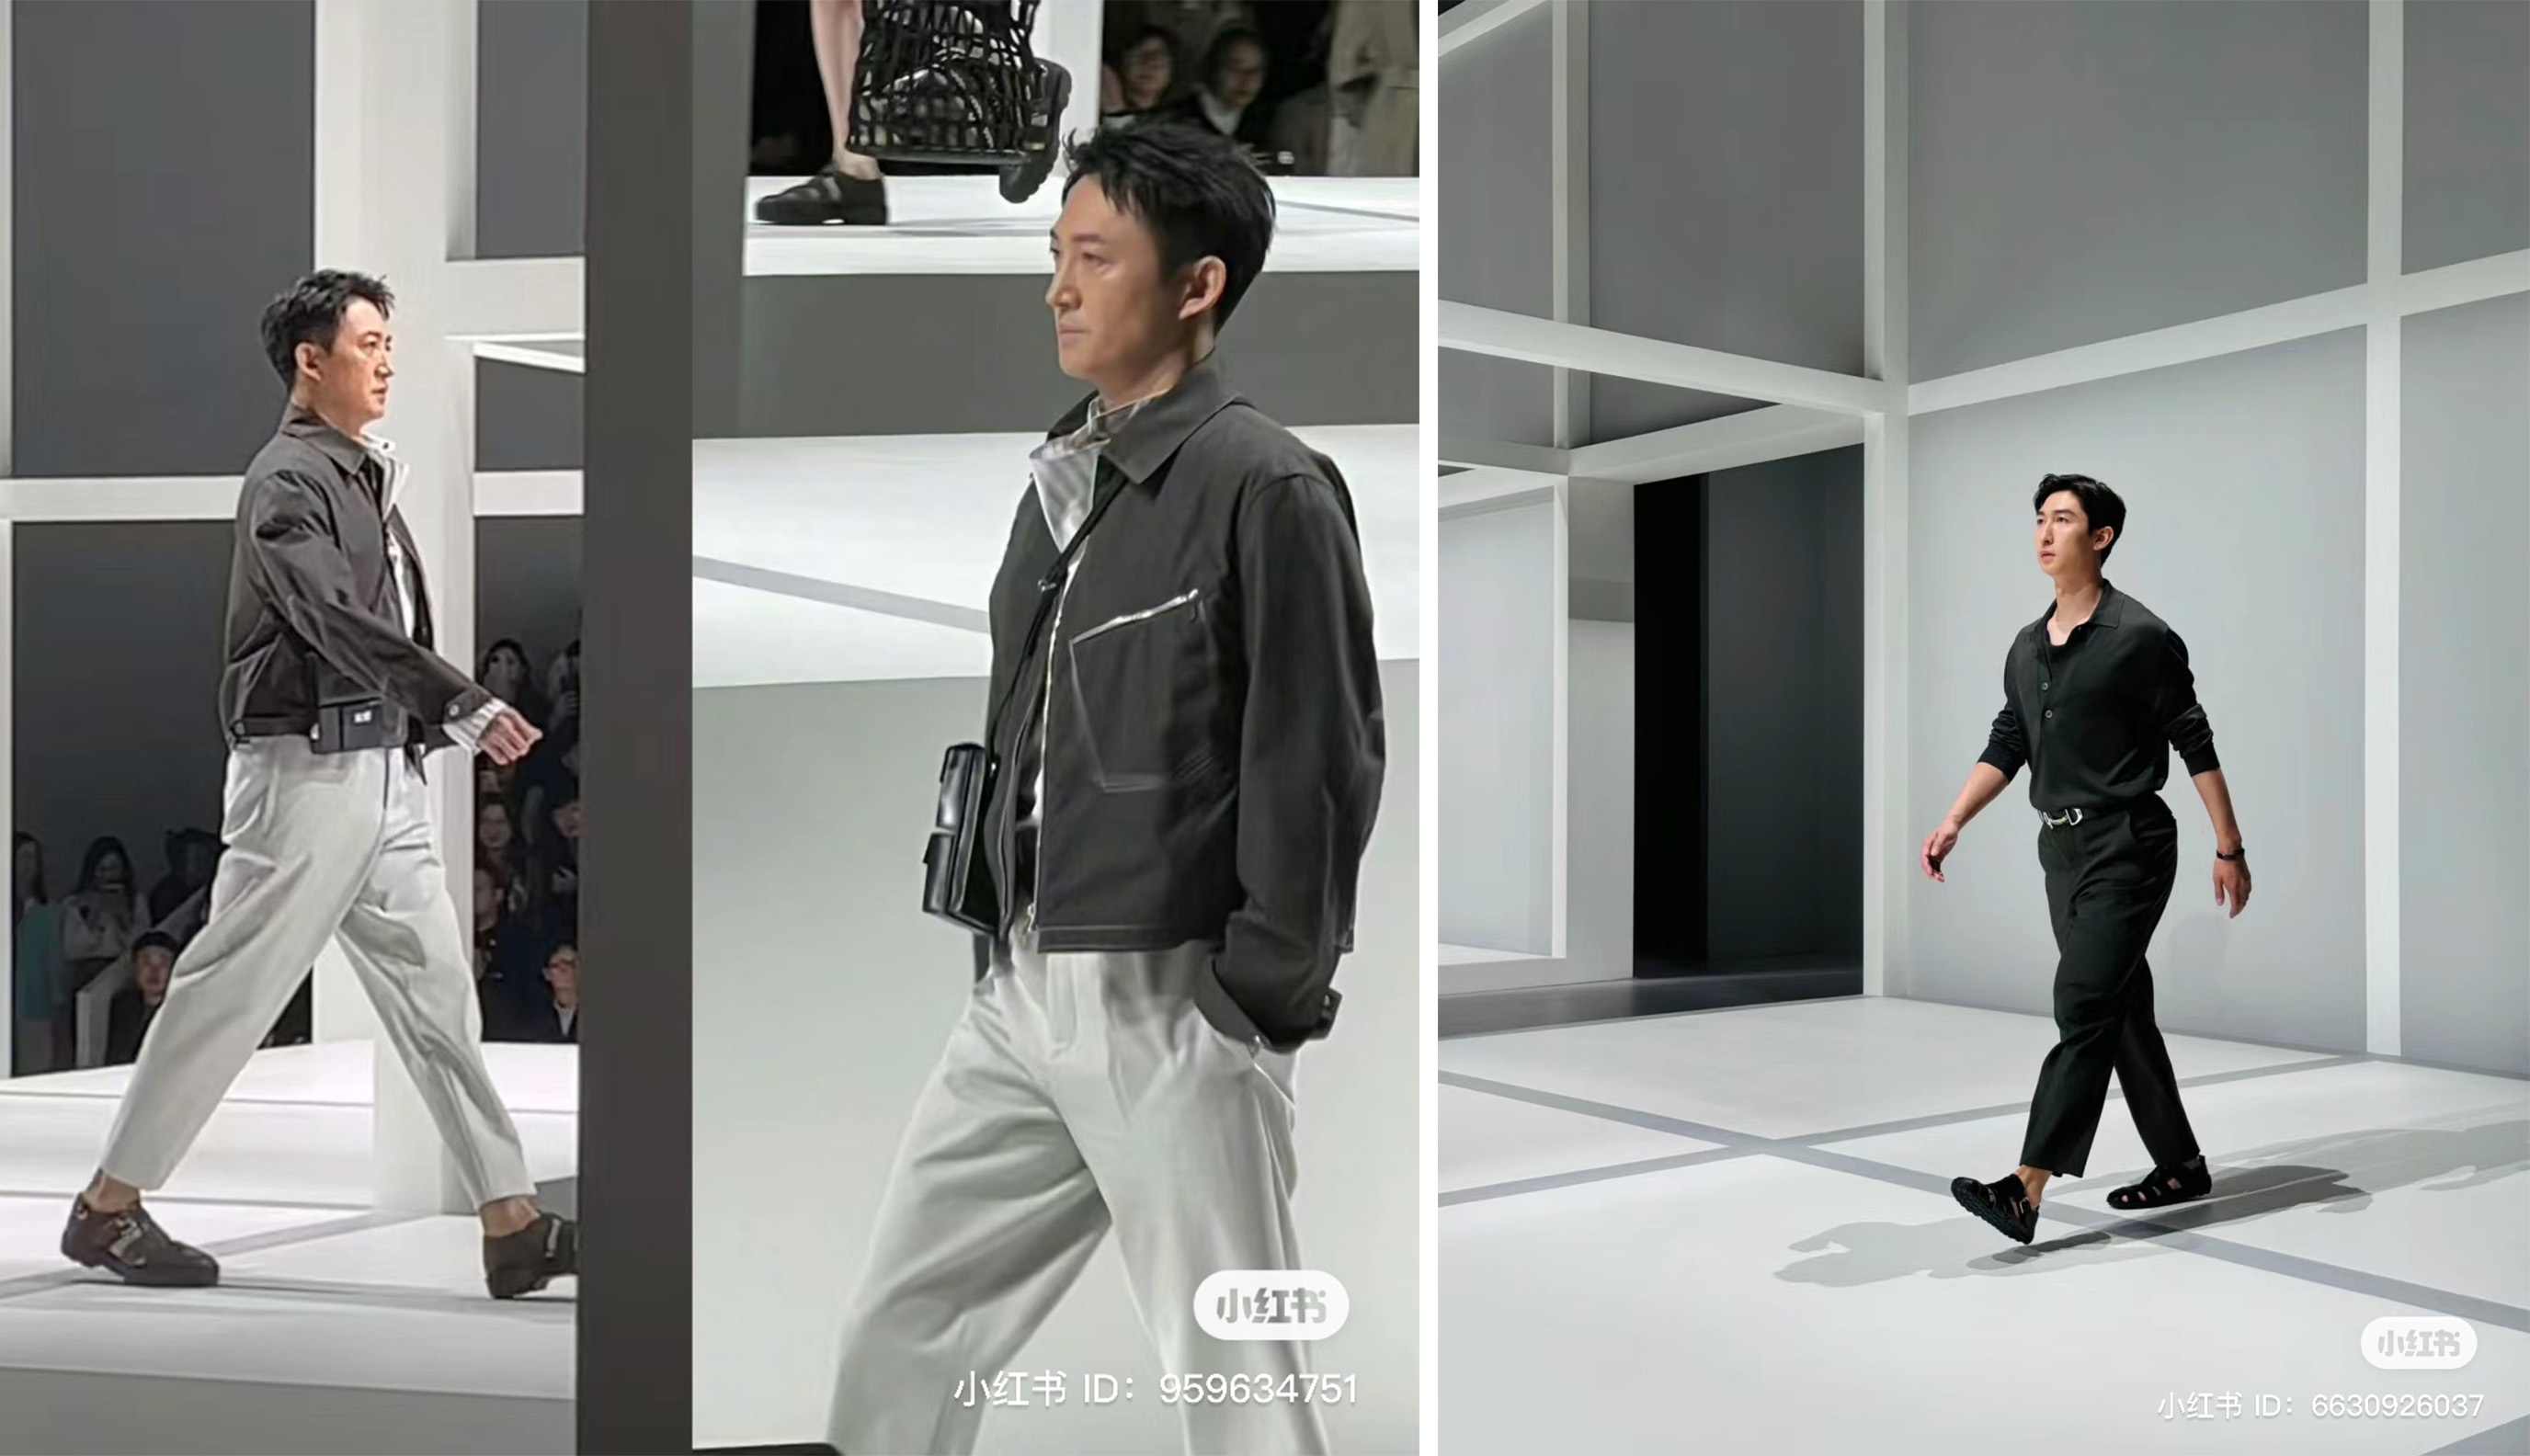 Chinese netizens react to actor Wang Yang and athlete Wu Dajing’s walk for Hermès. Photo: Xiaohongshu